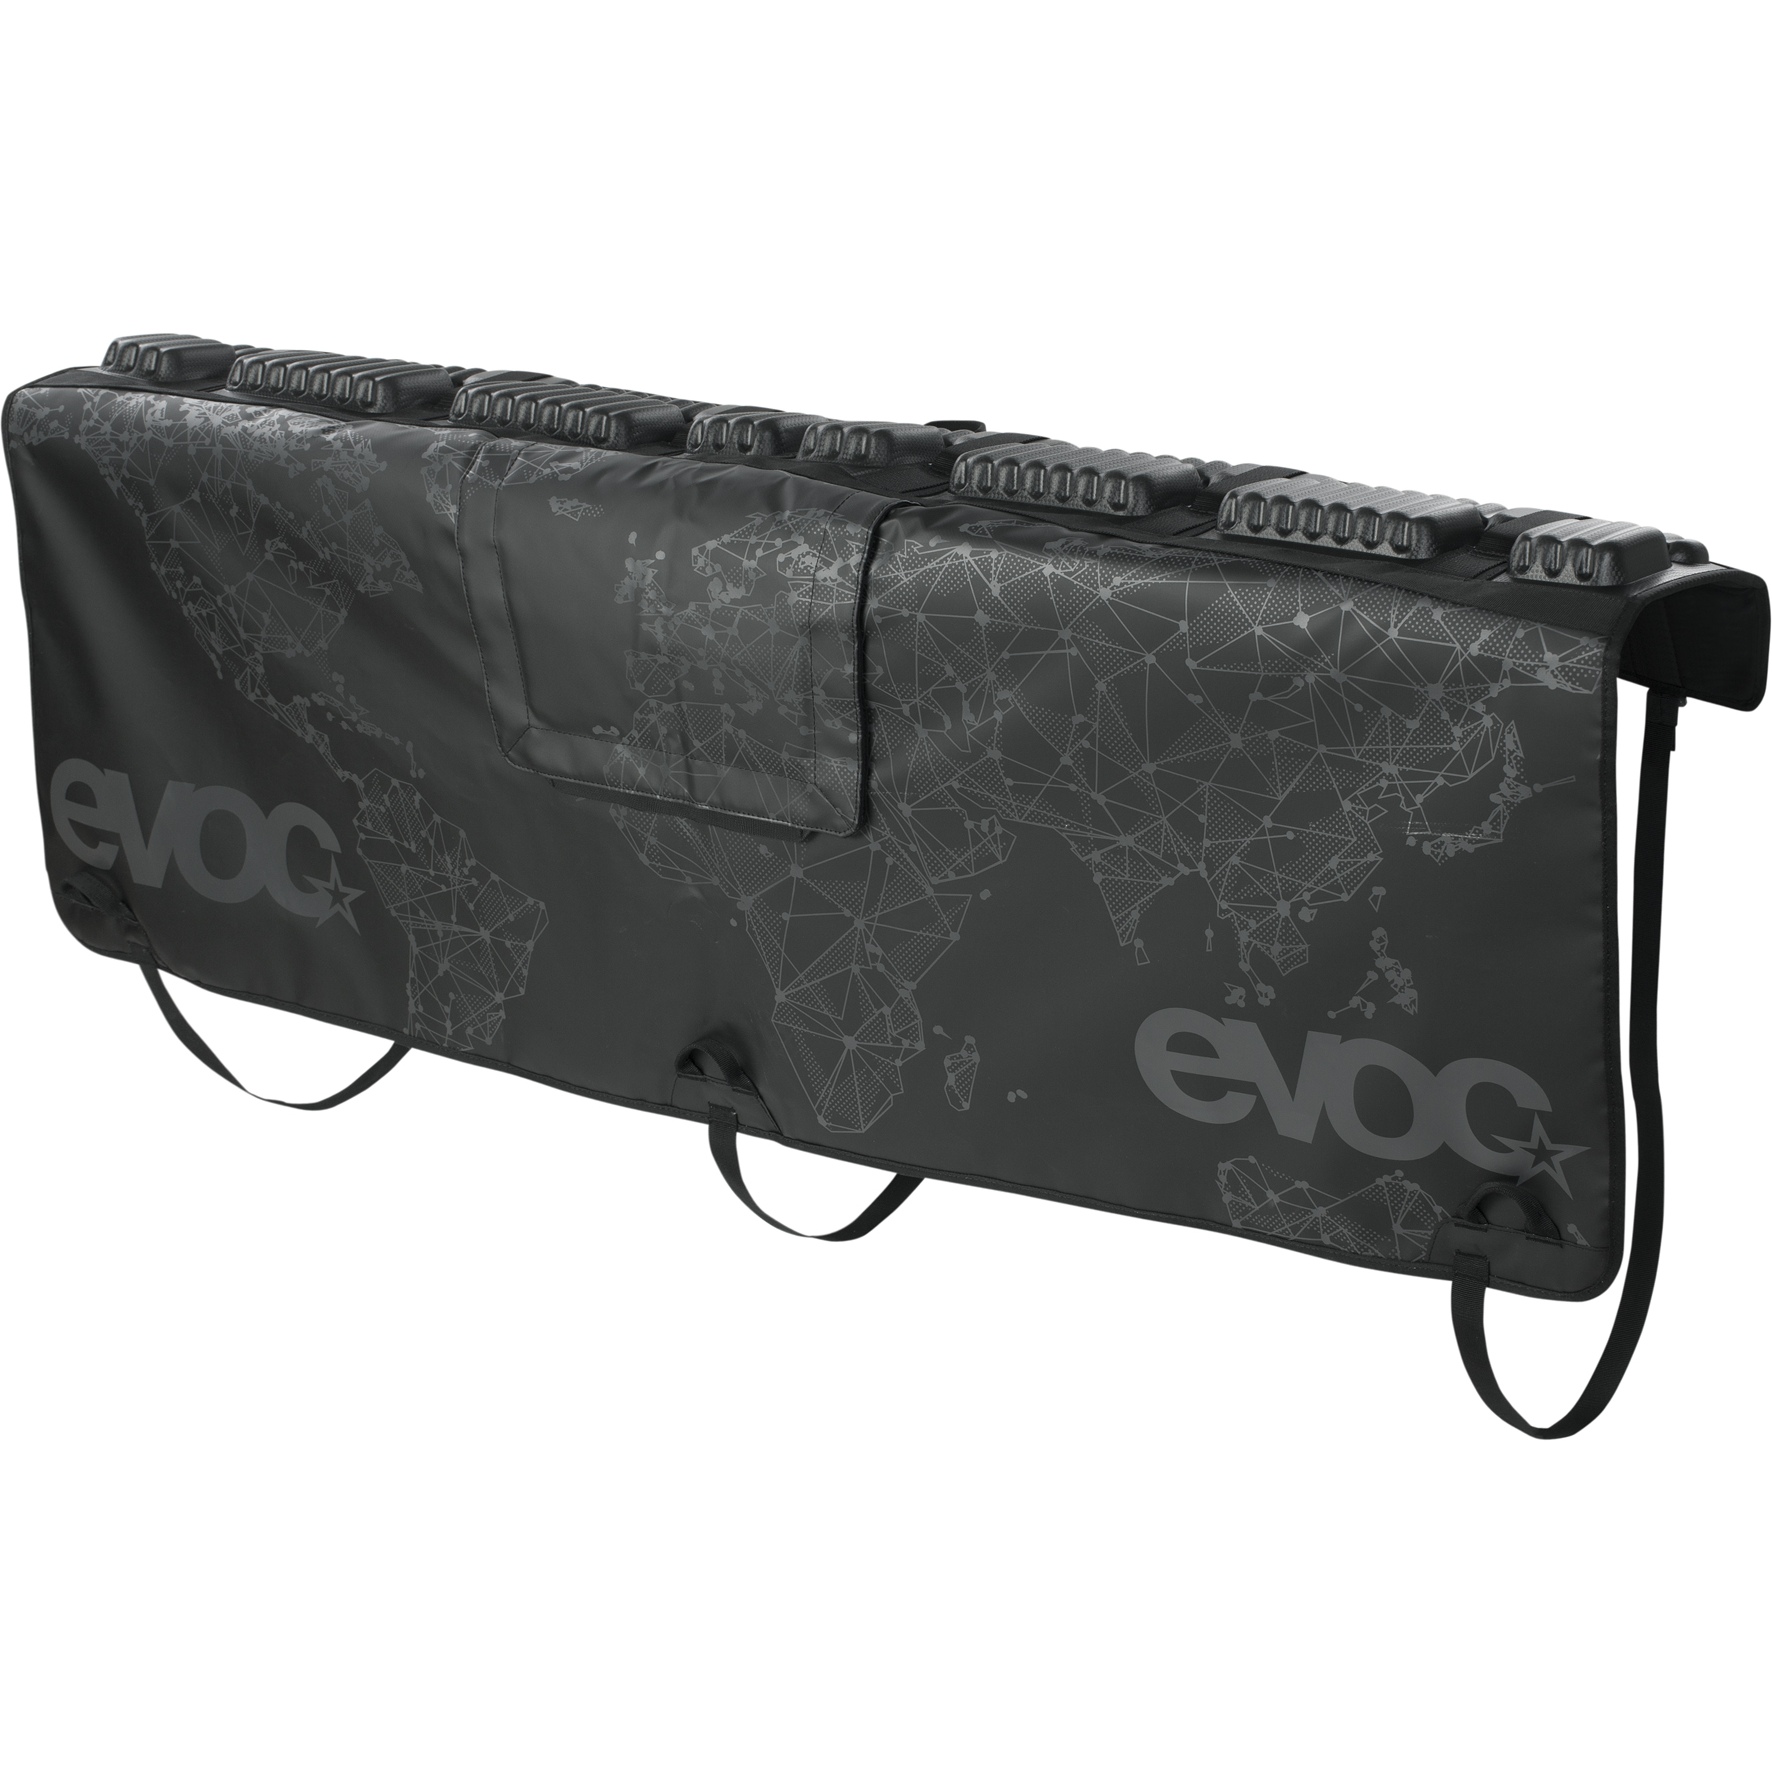 Productfoto van EVOC Tailgate Pad Curve - Bescherming voor de Achterklep - Maat M/L - Zwart